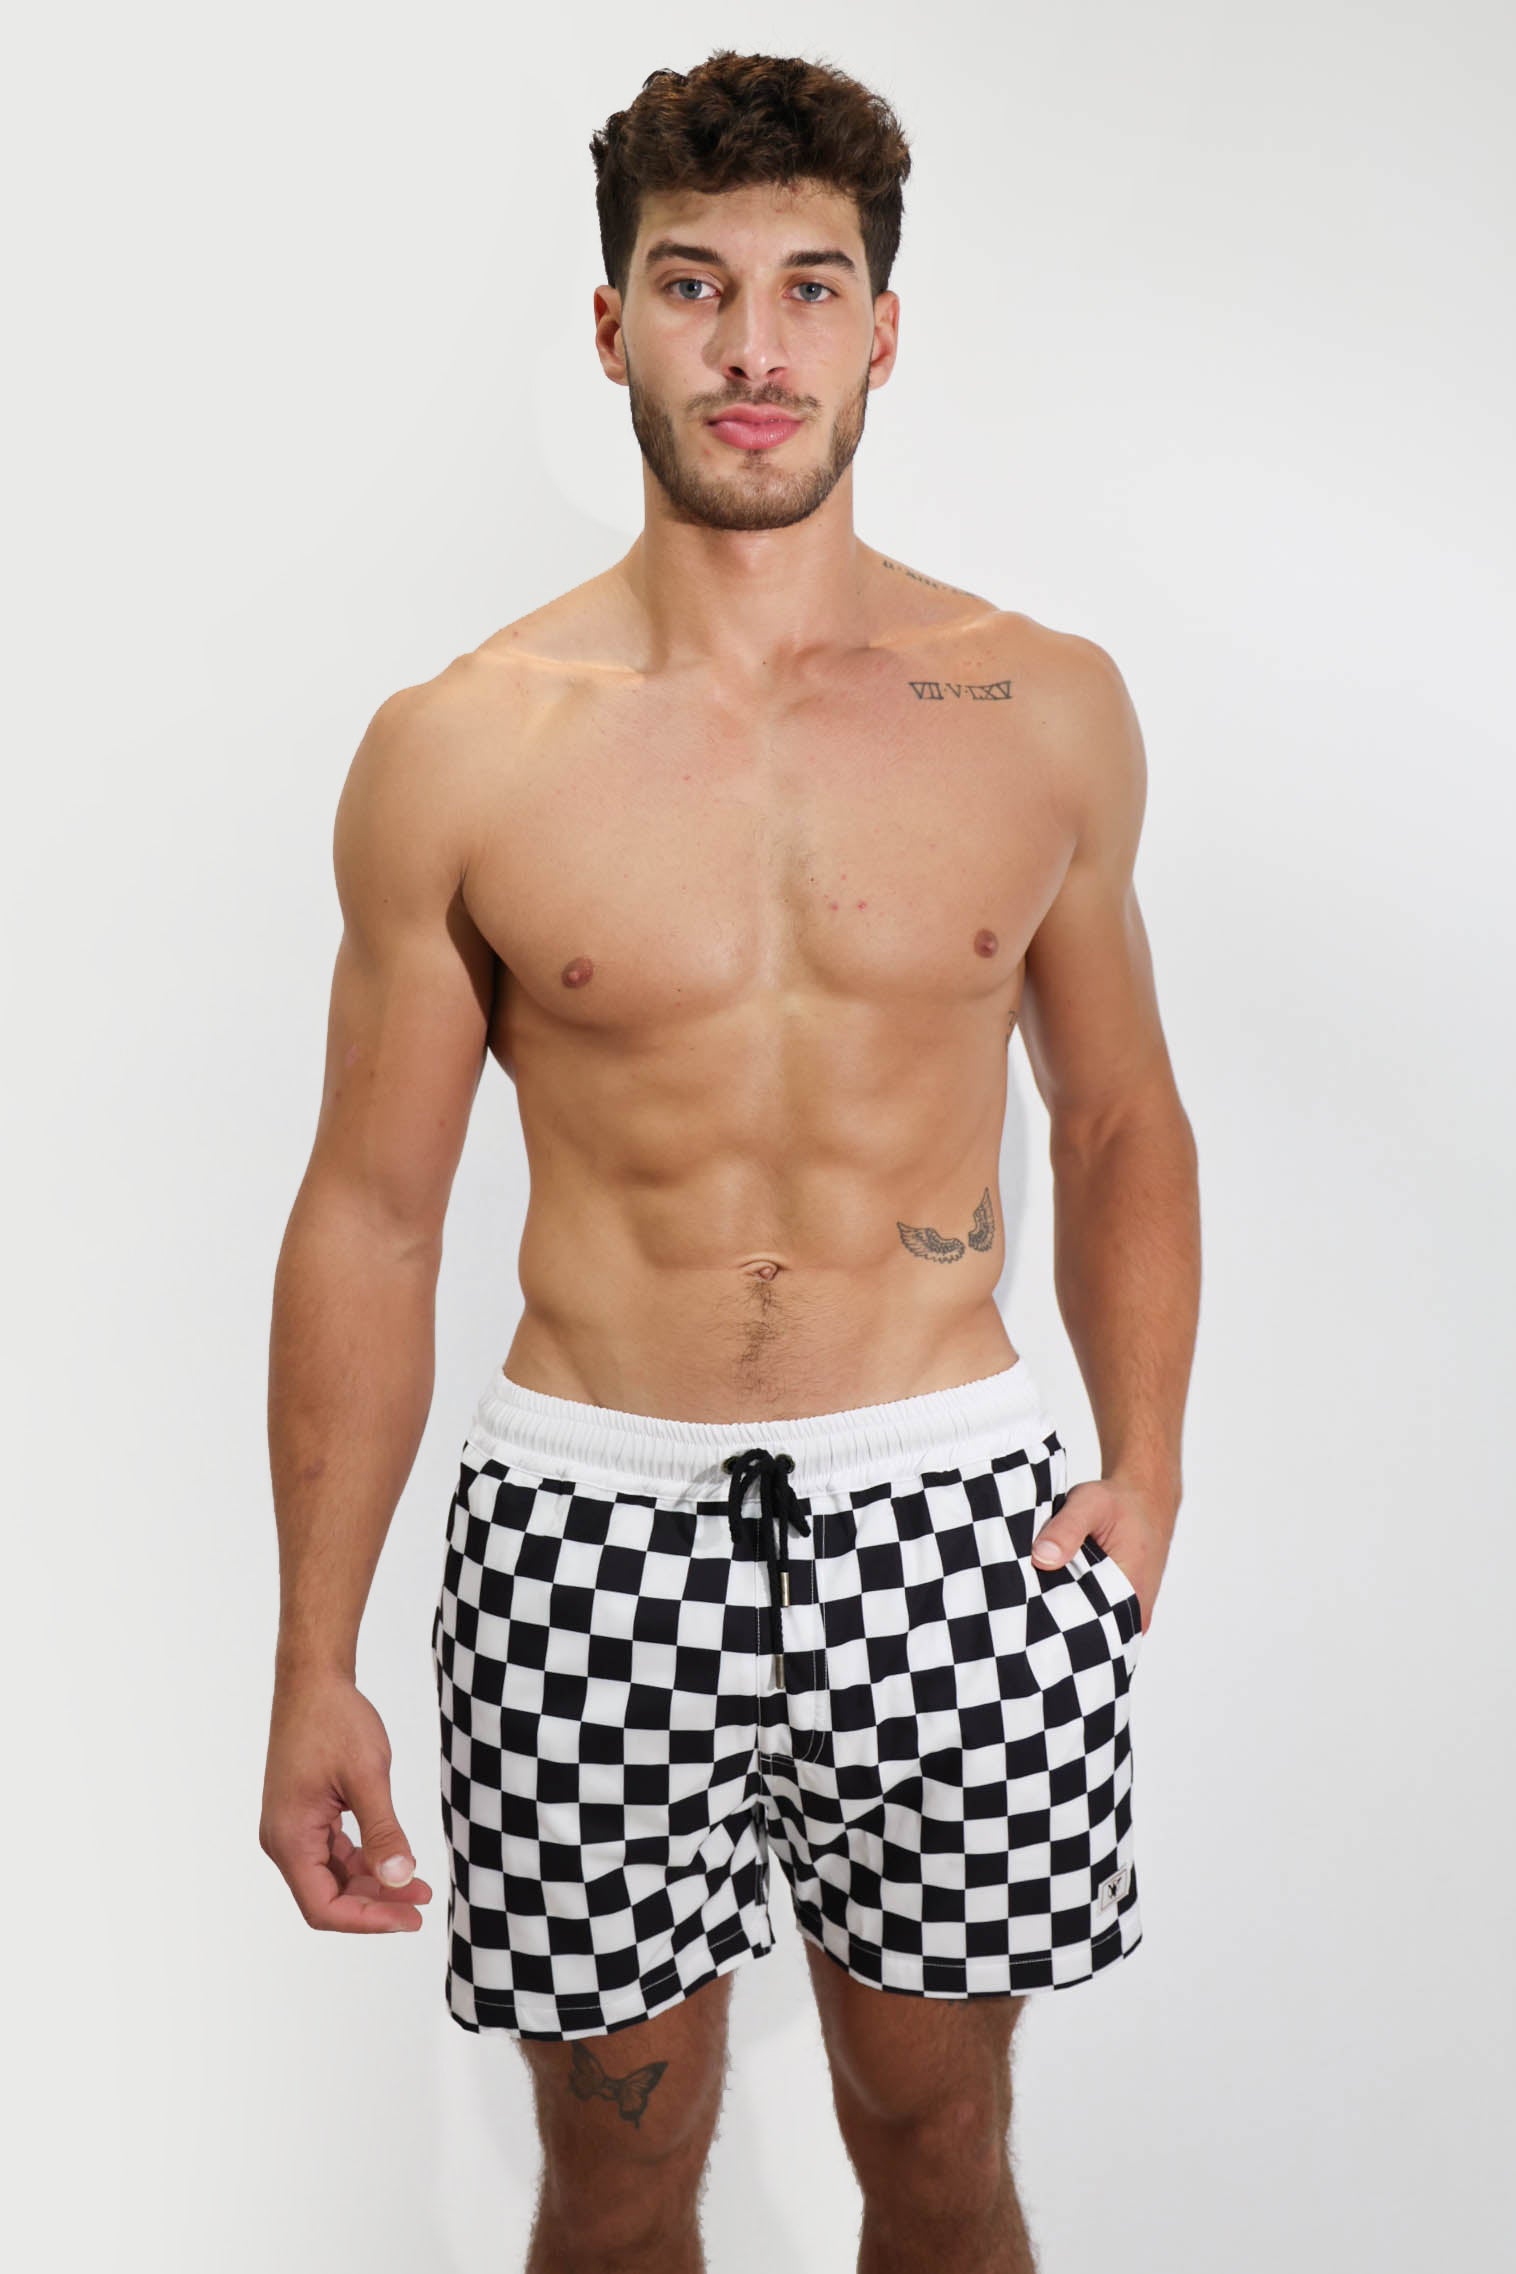 Checkered Shorts 4.5"